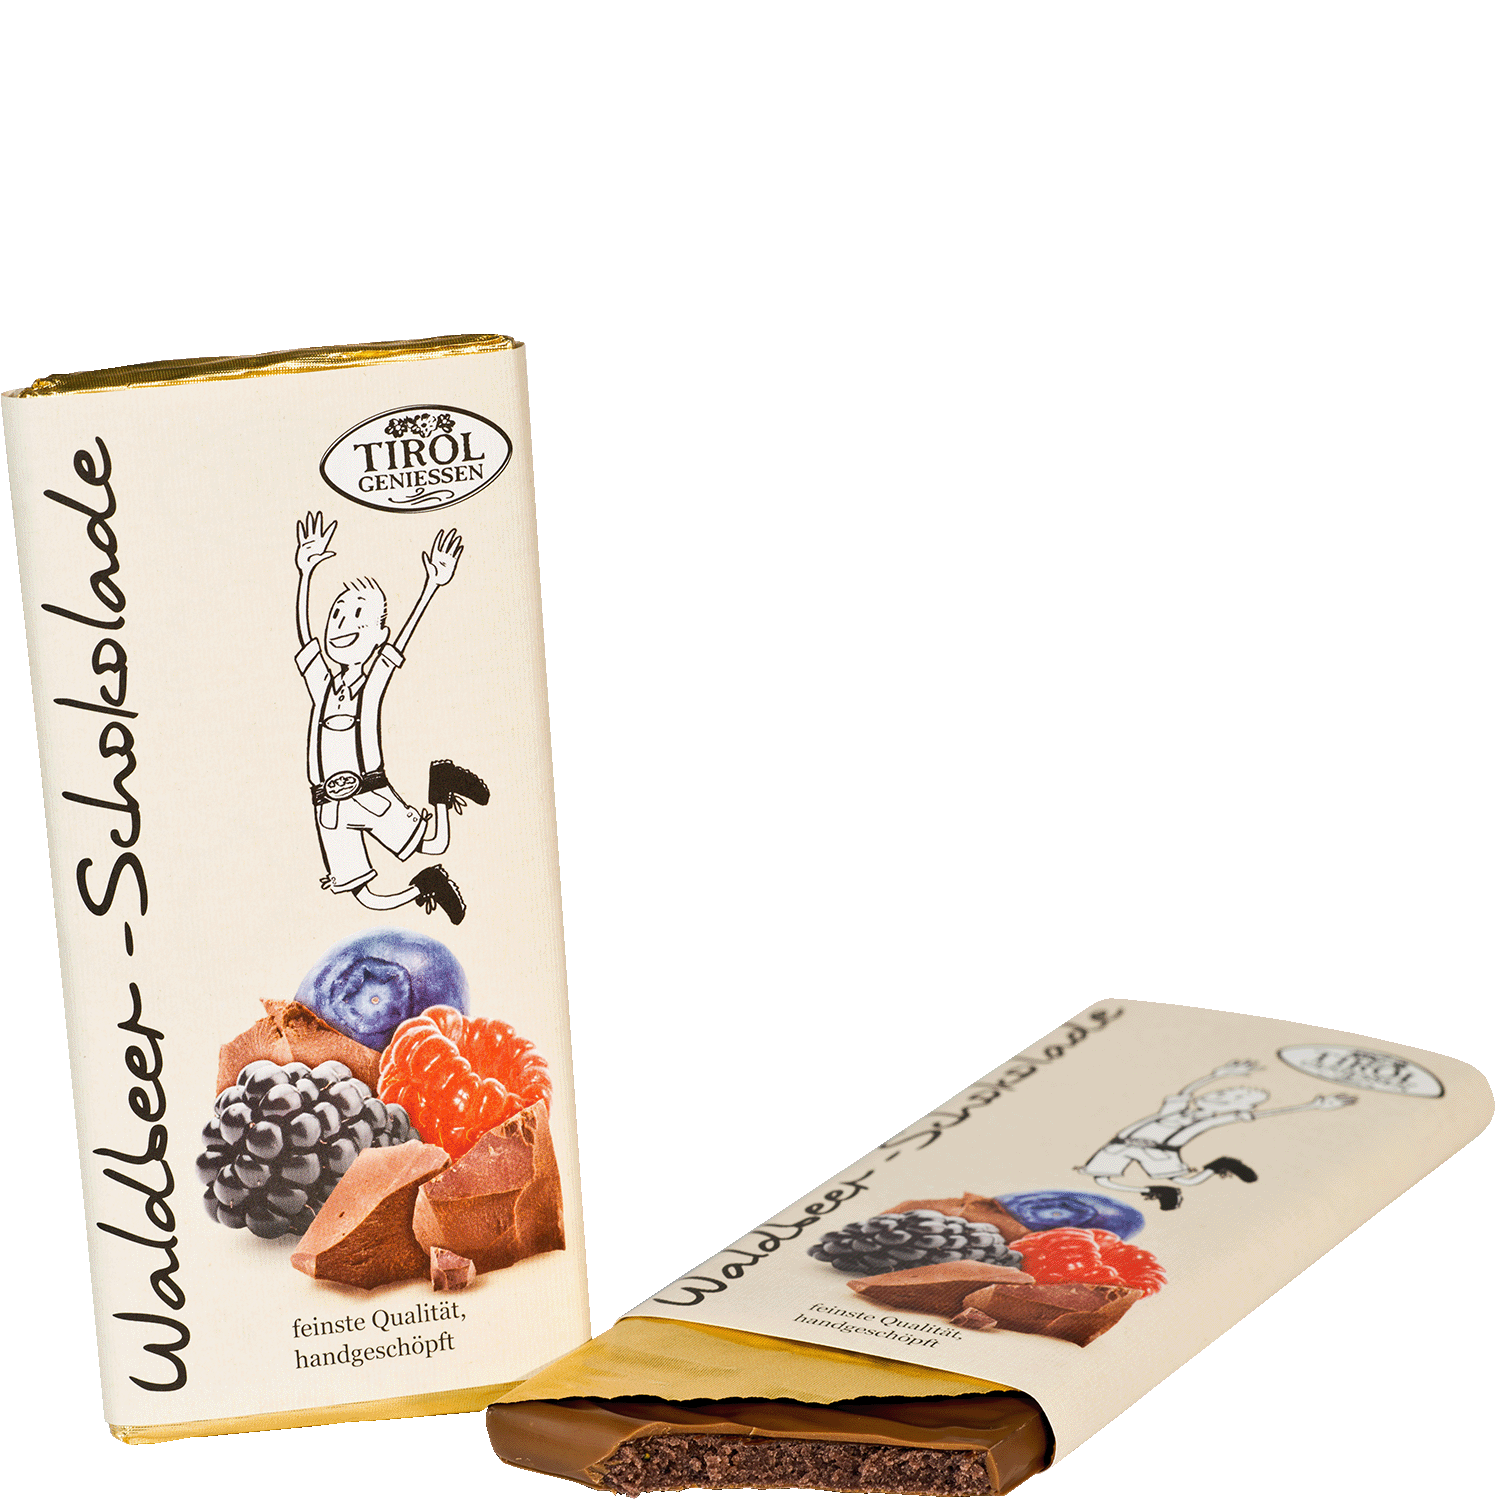 Waldbeer Schokolade von Tirol geniessen